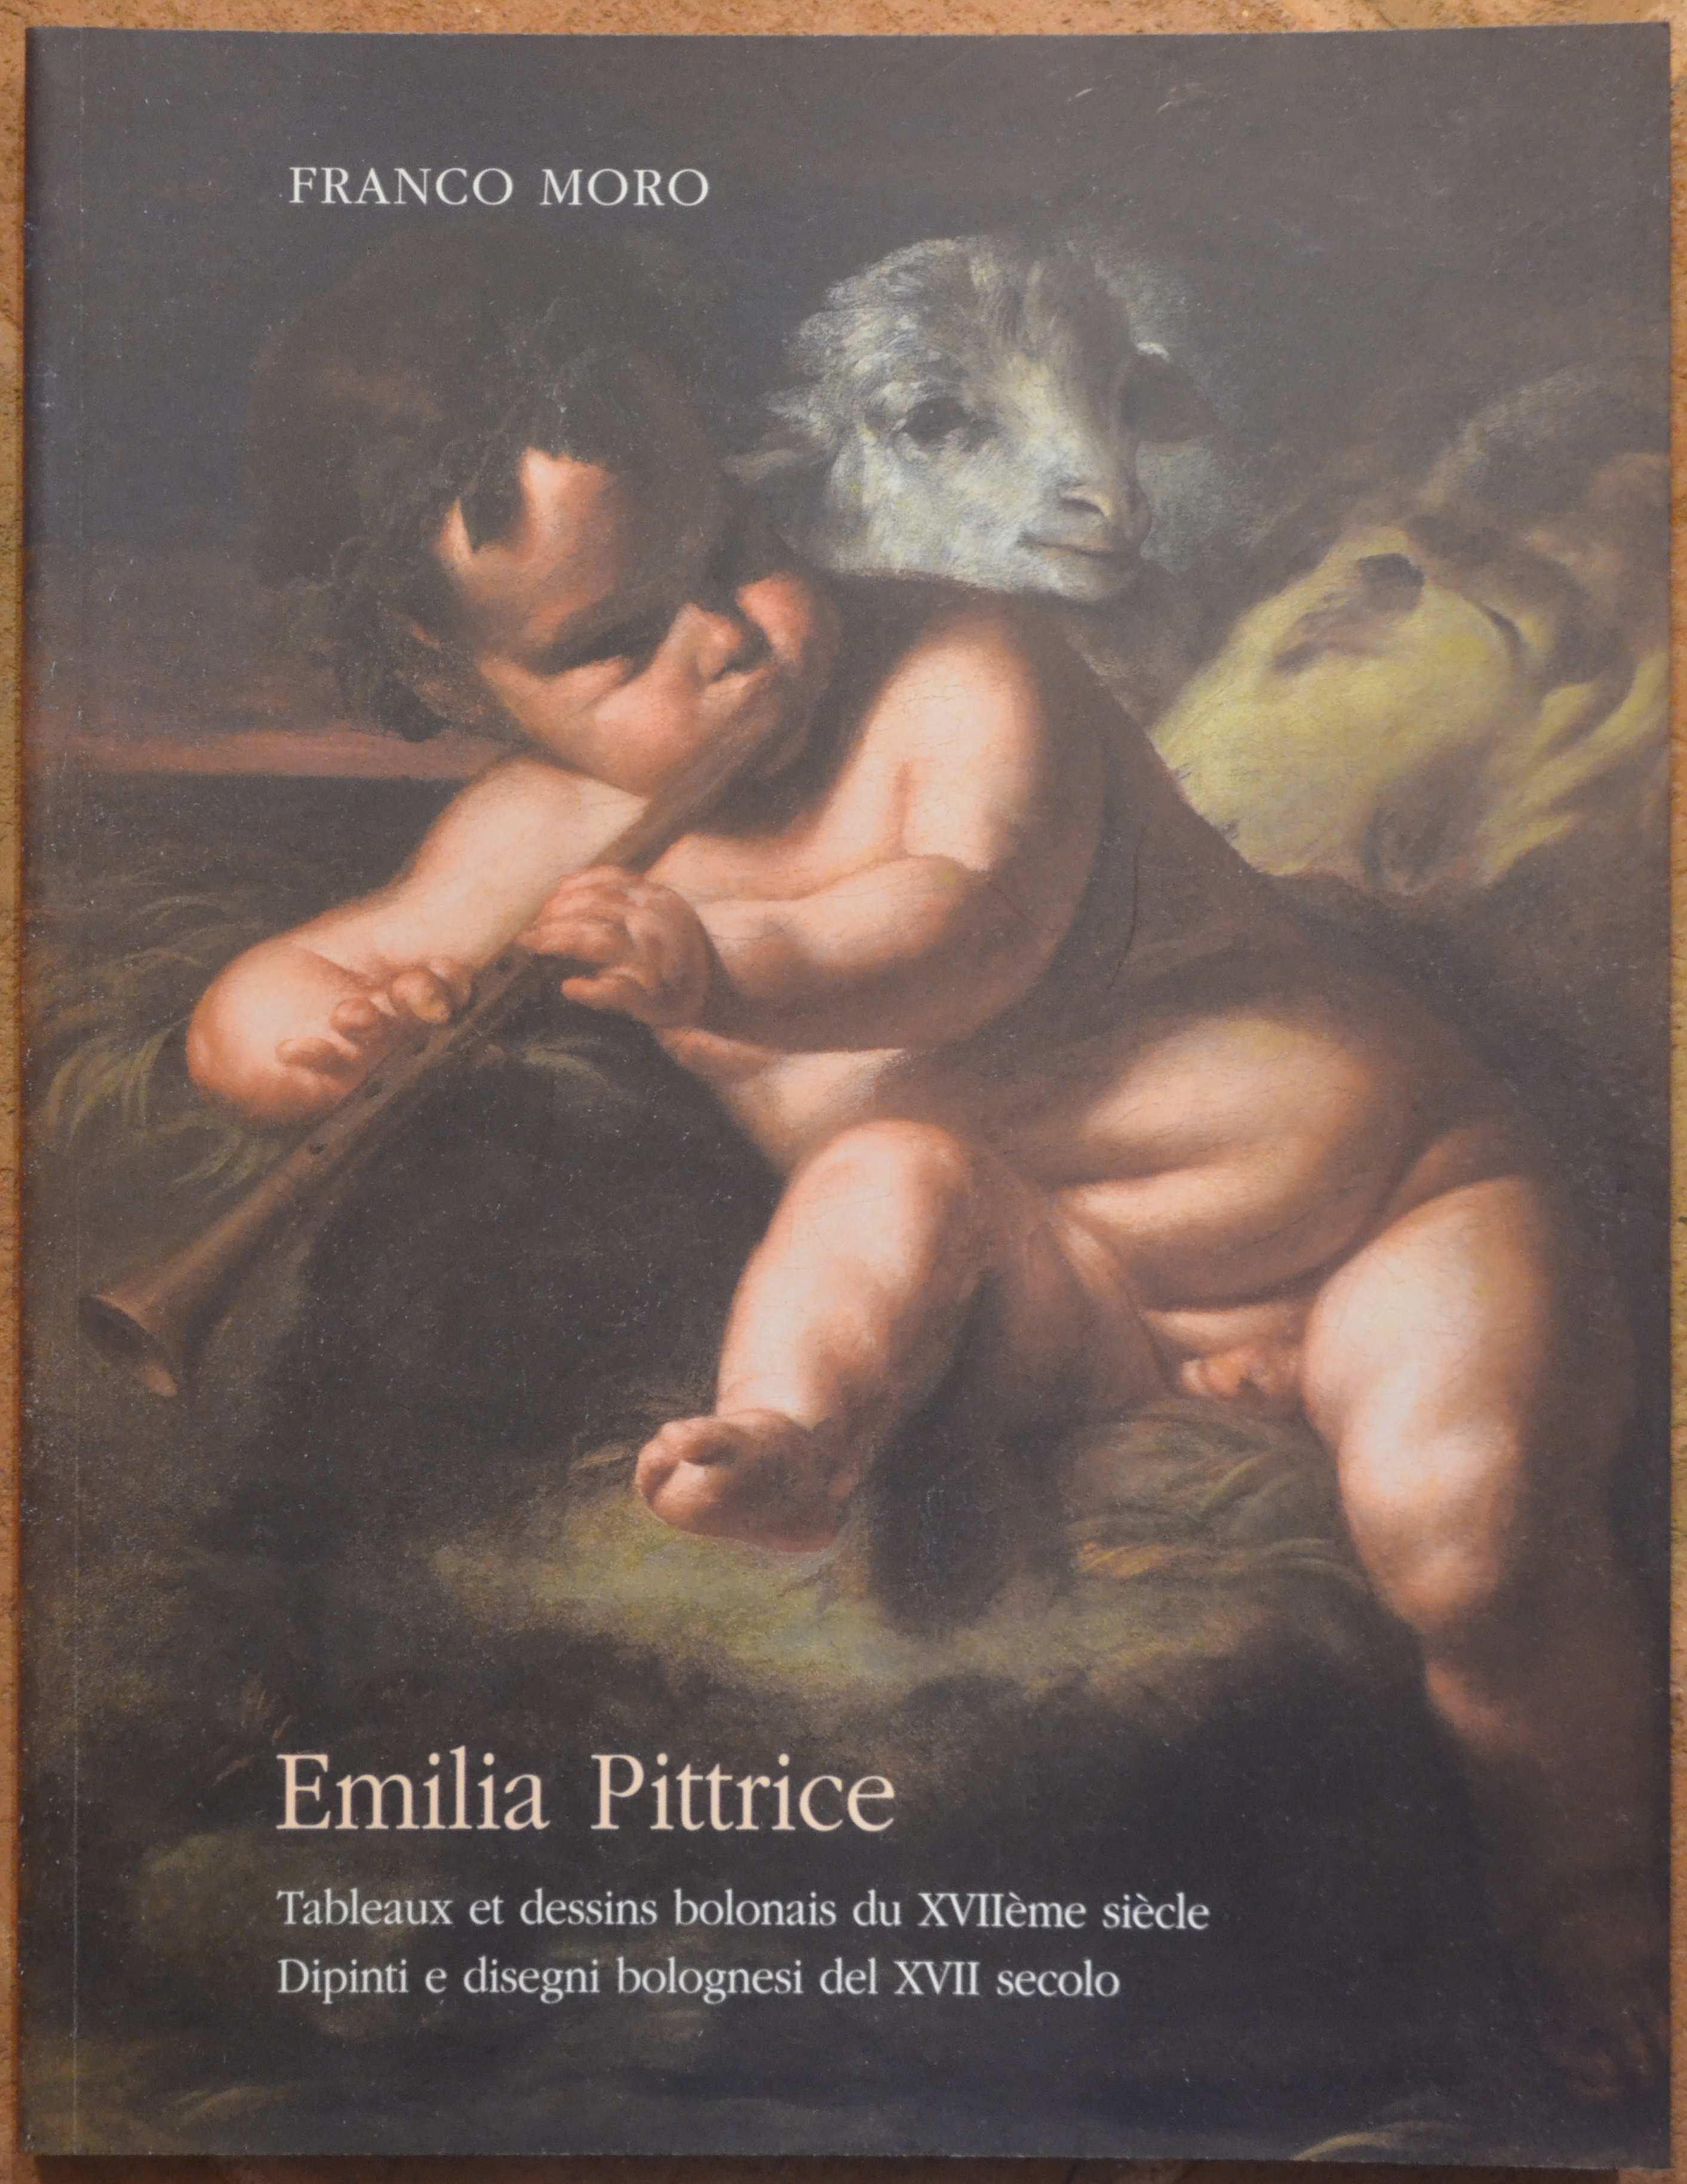 Emilia pittrice. Dipinti e disegni bolognesi del XVII secolo